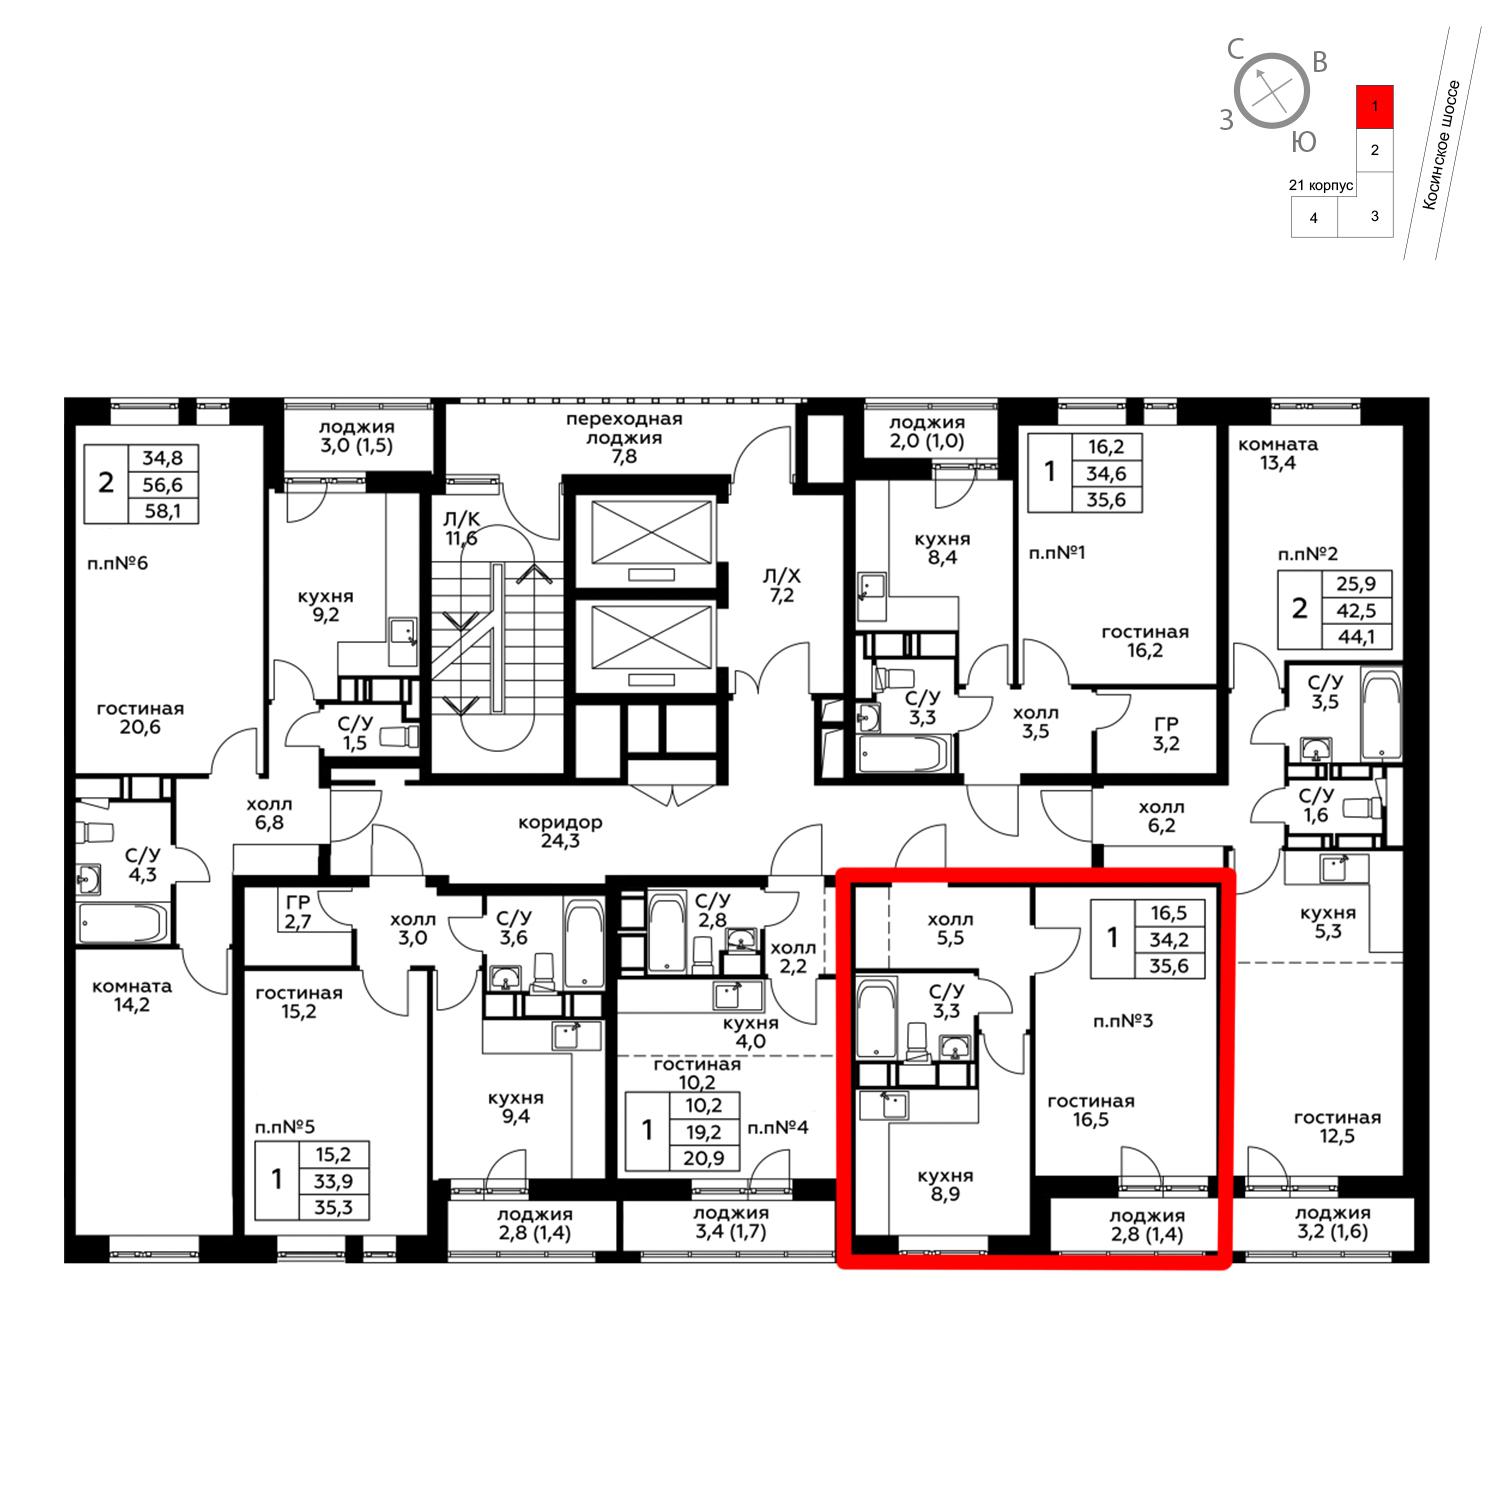 Продаётся 1-комнатная квартира в новостройке 35.7 кв.м. этаж 17/20 за 4 723 110 руб 